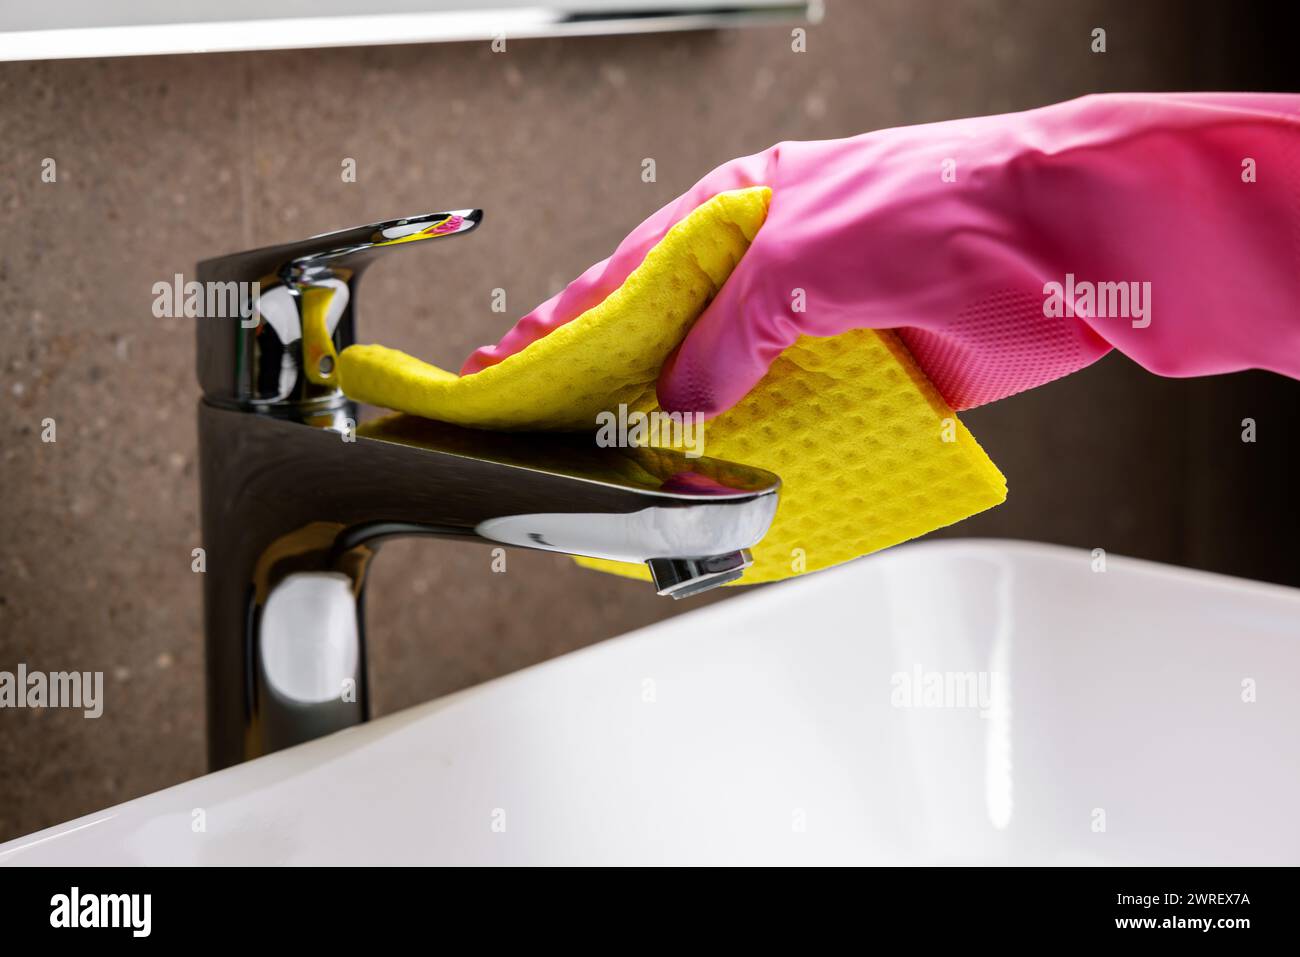 servizio di pulizia e lavori. la mano con un guanto in gomma e una spugna pulisce il rubinetto cromato del lavandino del bagno Foto Stock